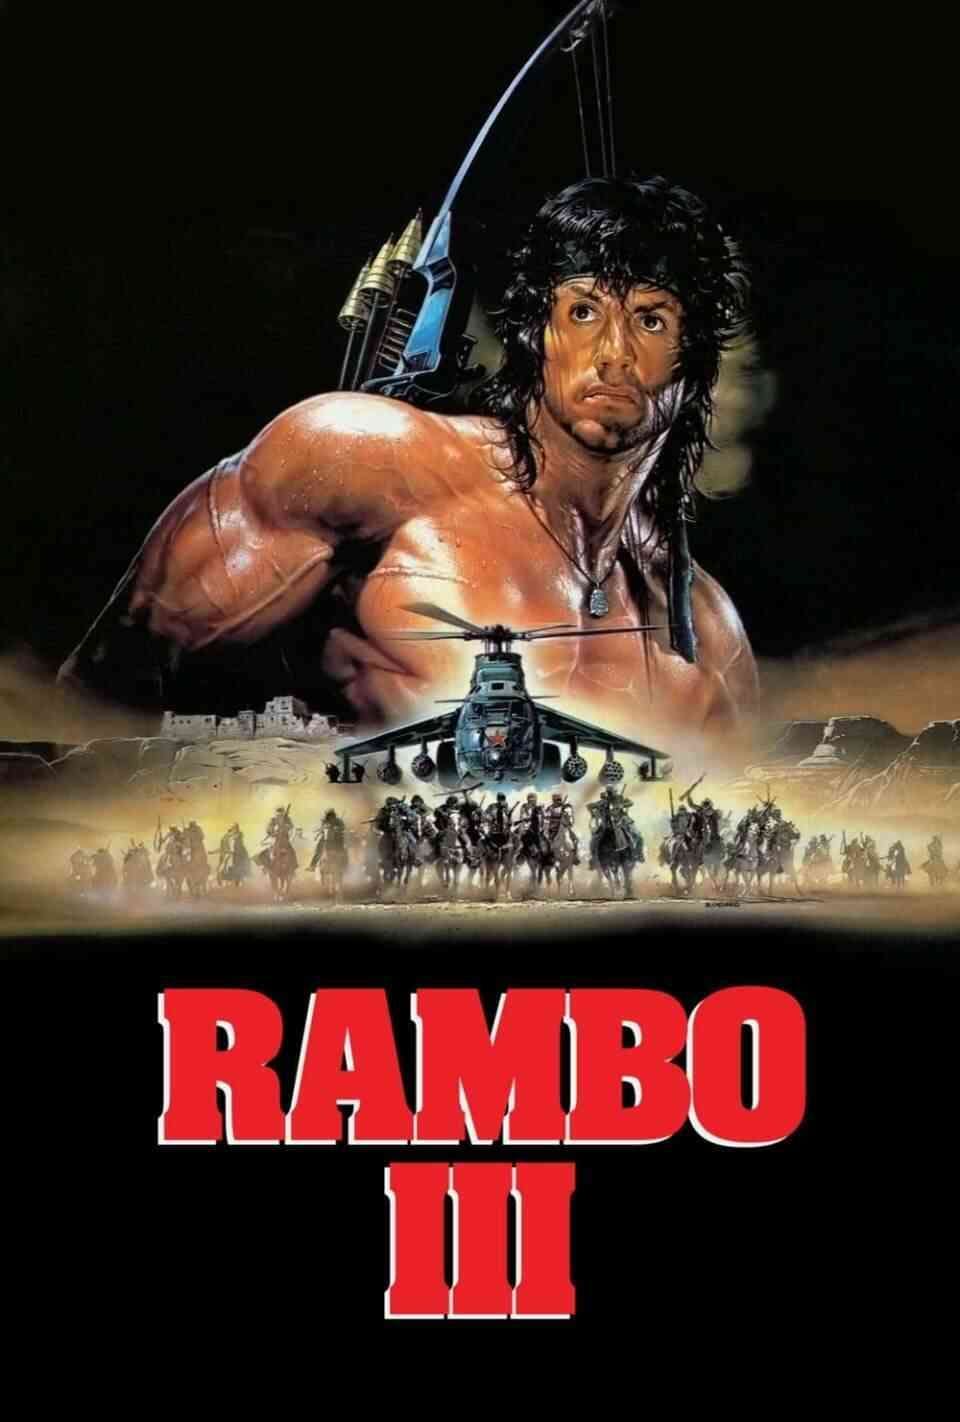 Read Rambo III screenplay.